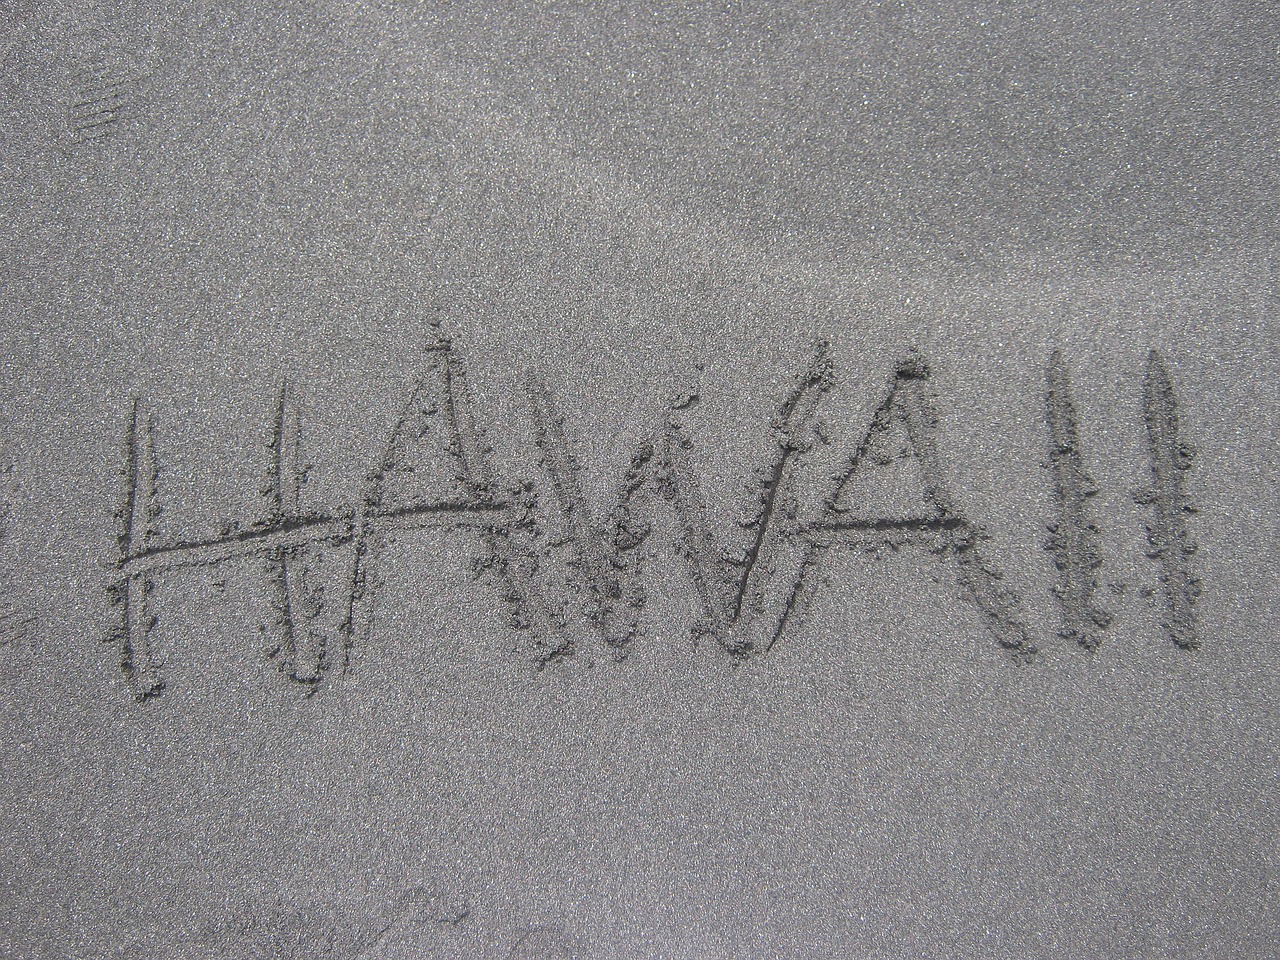 Shapers-Club- Le mot « Hawaii » est écrit à la main en majuscules sur une surface sablonneuse à Sunset Beach. -surfshop-surfboard